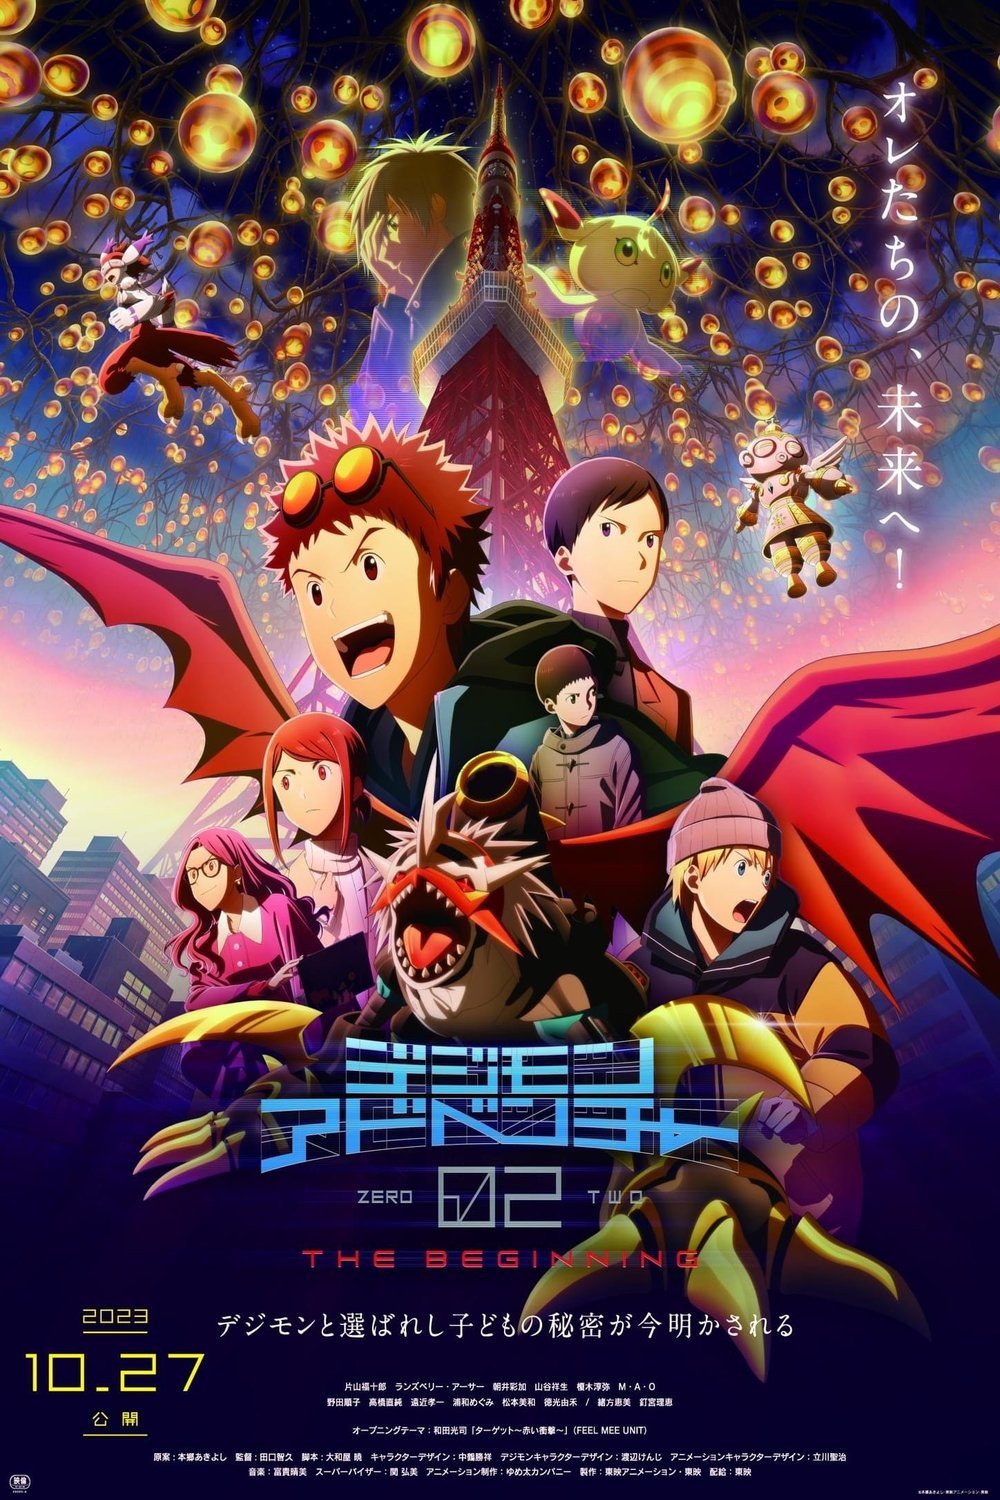 L'affiche originale du film Digimon Adventure 02: The Beginning en japonais